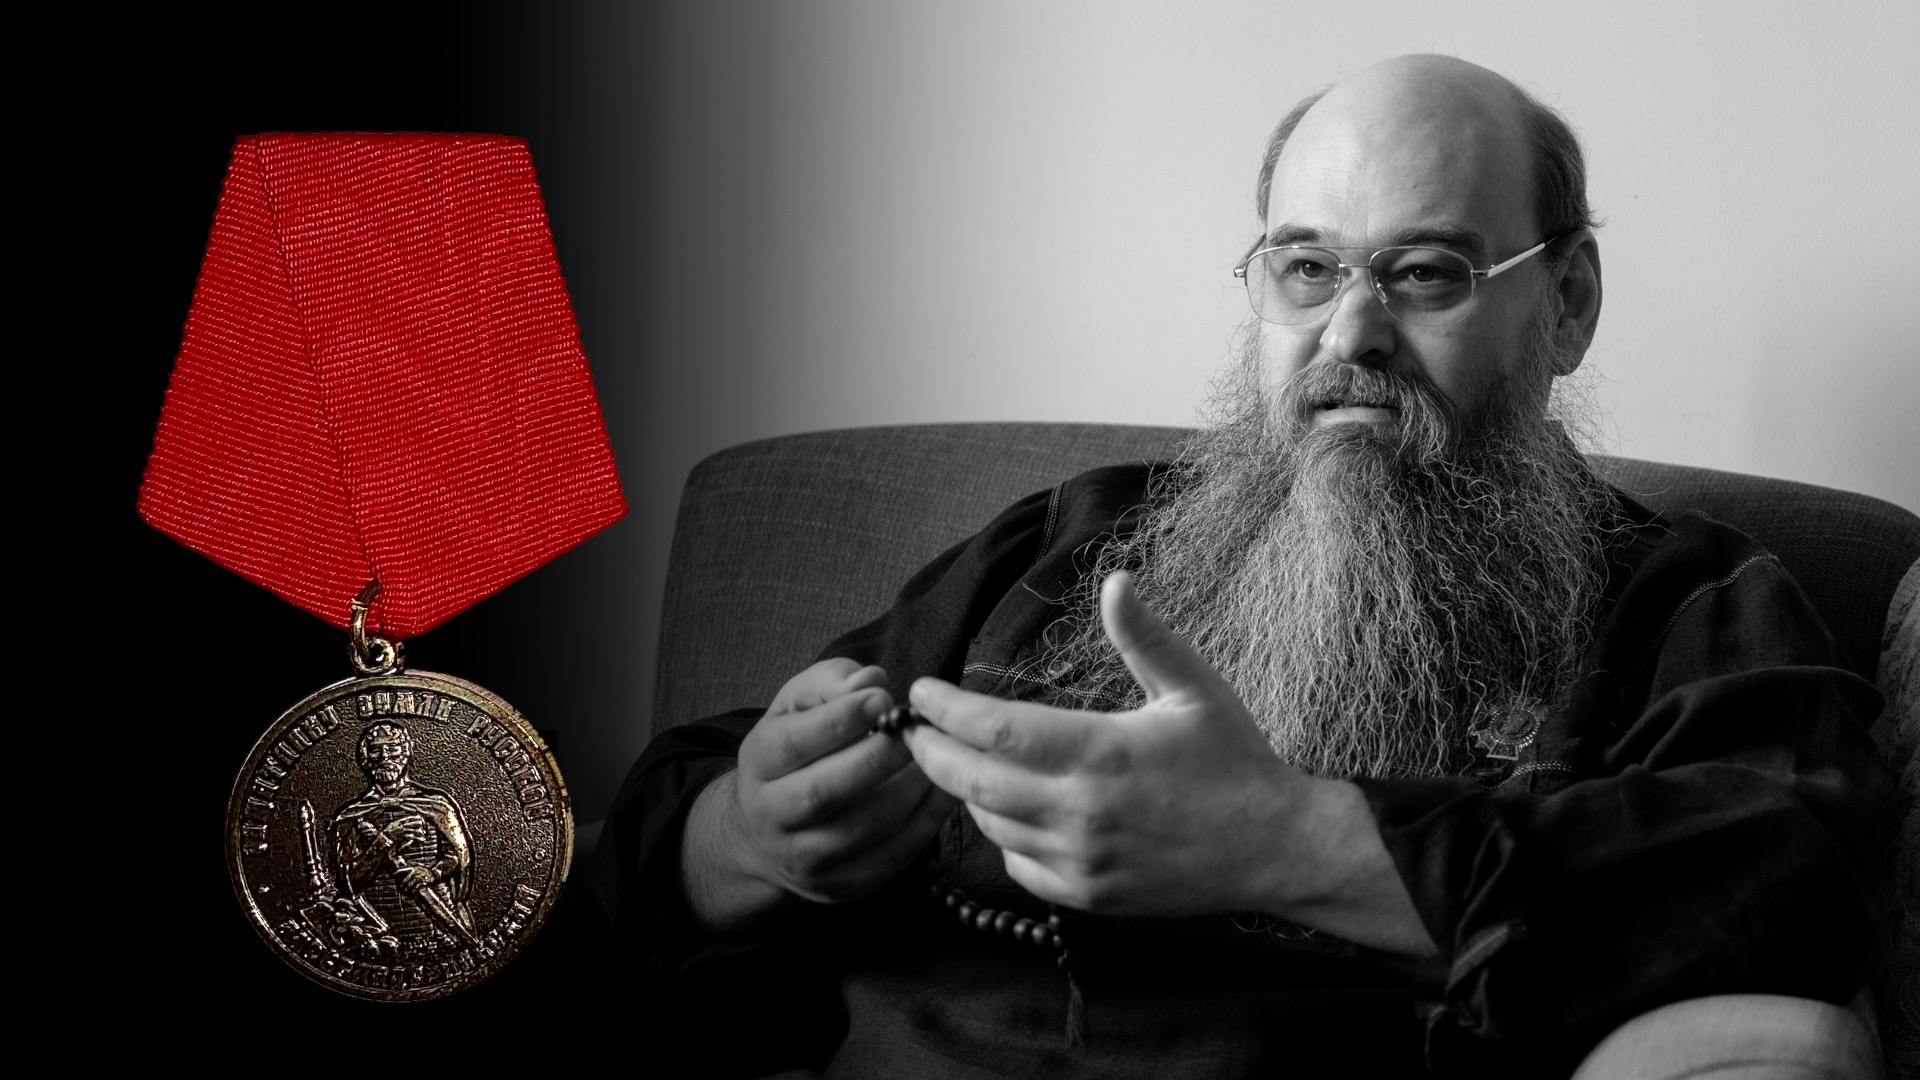 Константин Душенов посмертно награждён медалью за боевые заслуги